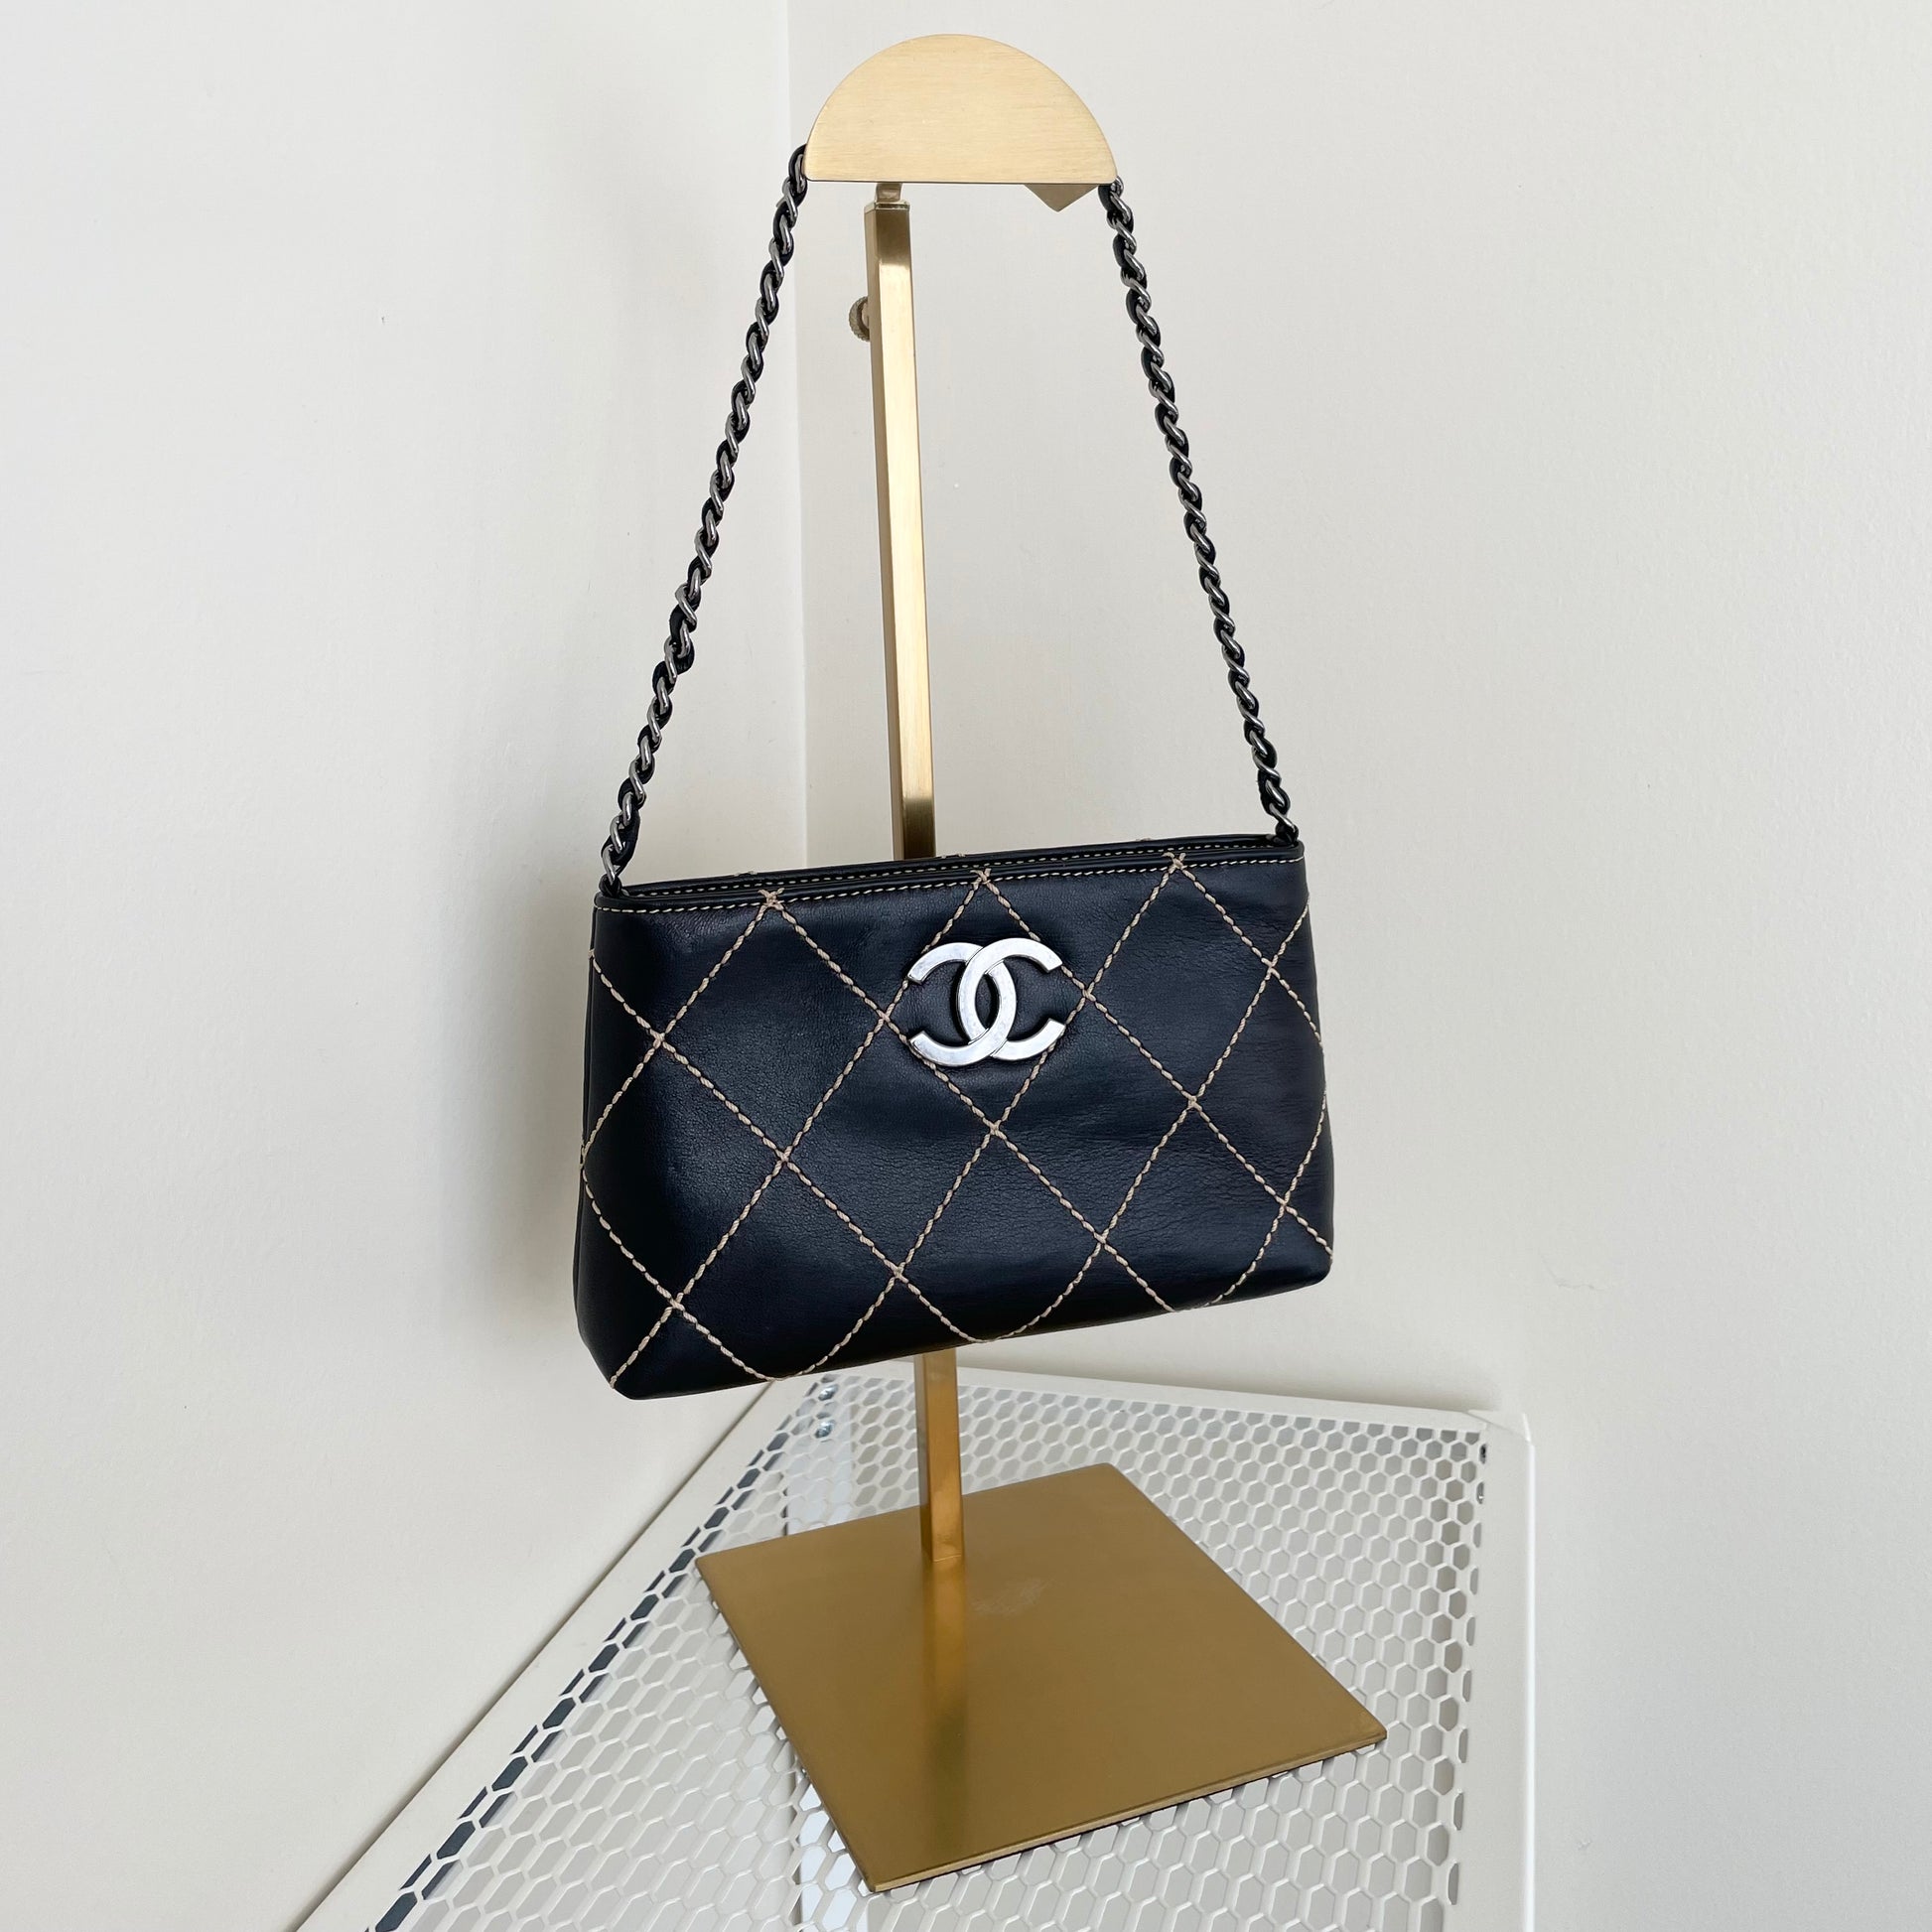 Chanel Black Quilted Wild Stitch Handbag 